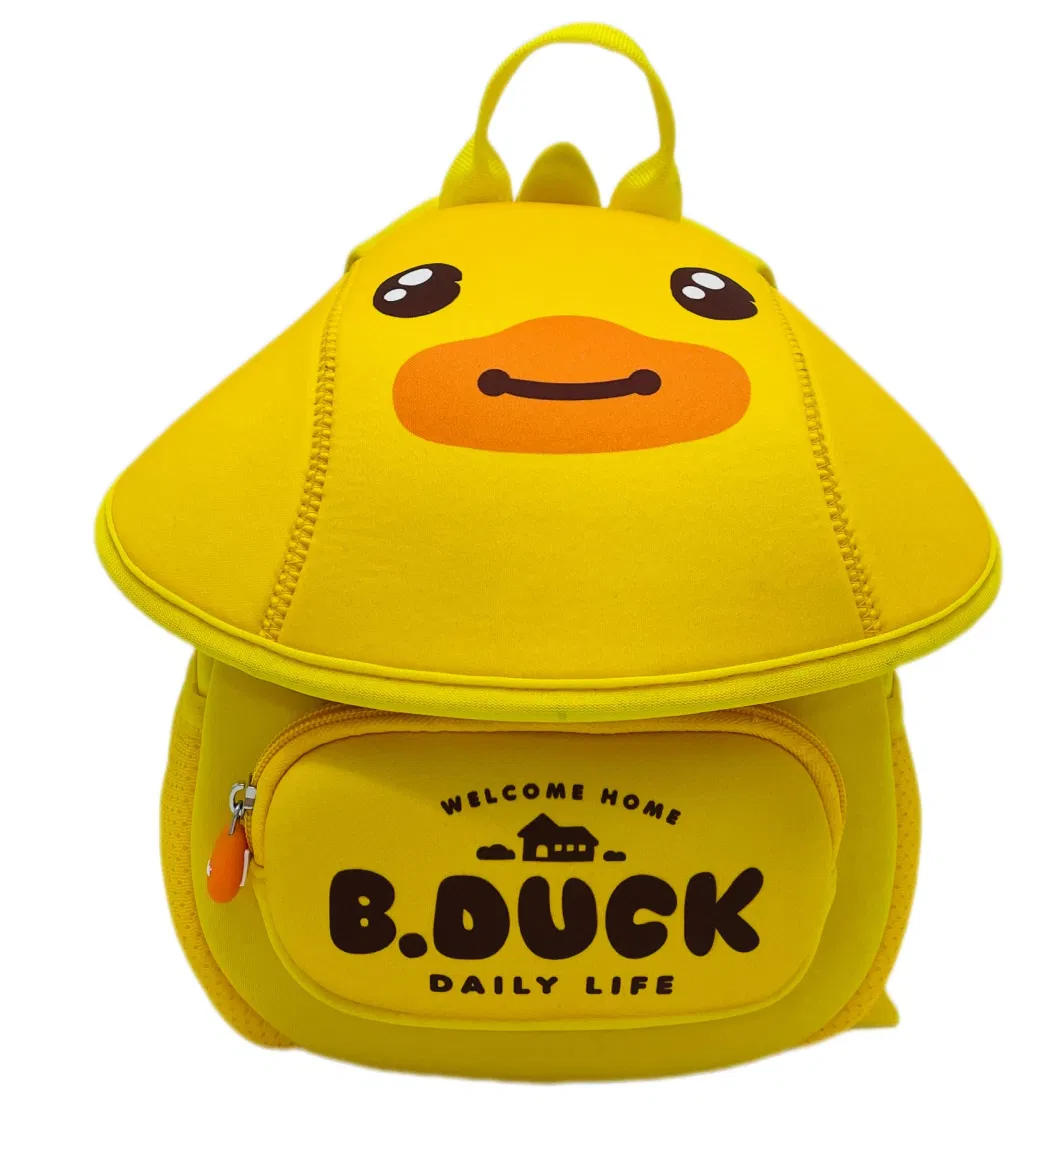 New Design 3D Cute Duck Neoprene Toddler Backpack Cartoon Animal Preschool Kids Bookbag with Bottle Holder School Lunch Backpack